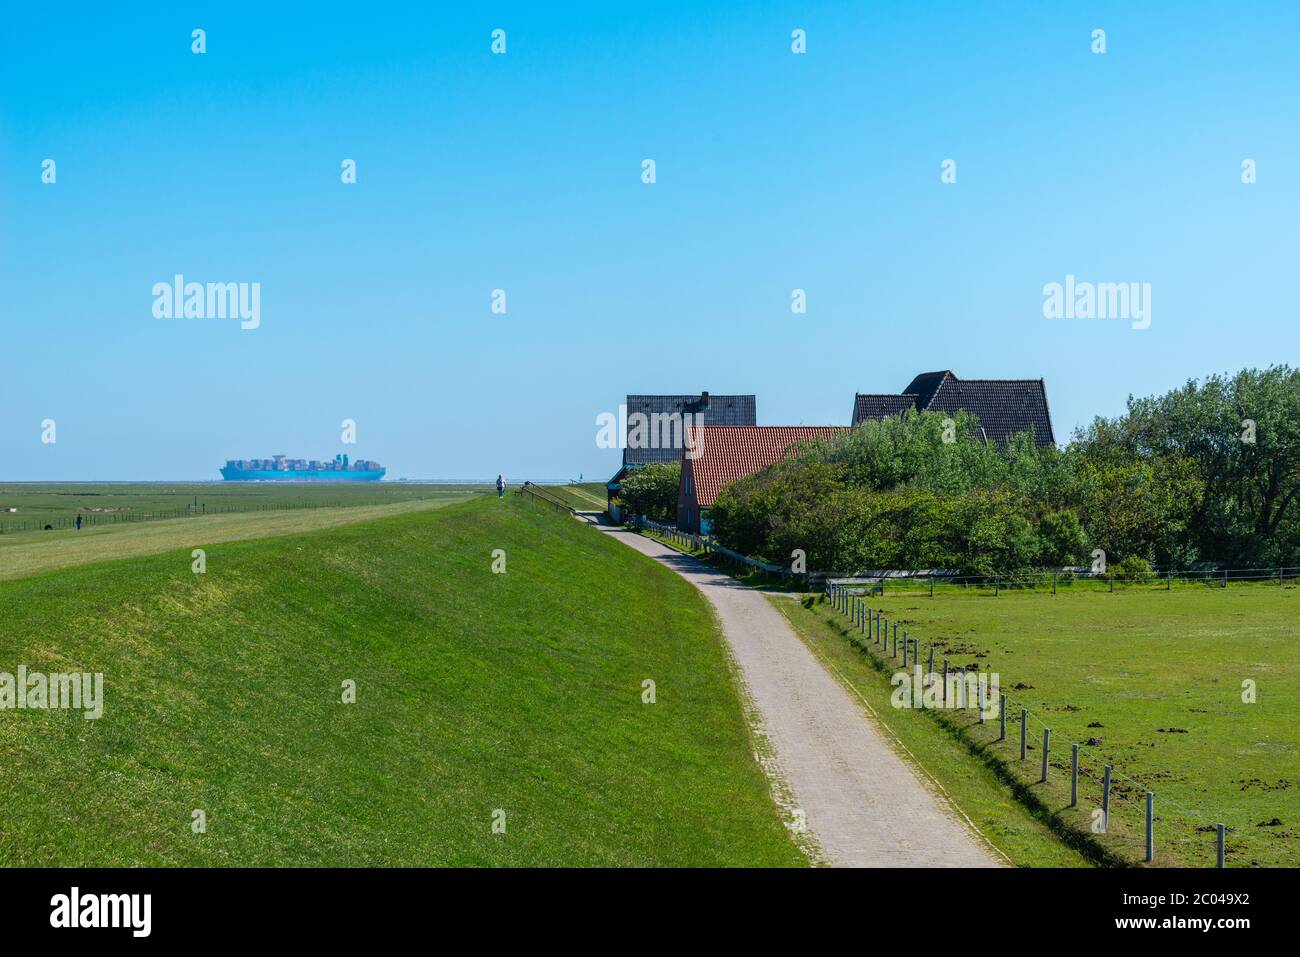 Île de Neuwerk, en mer du Nord, à 8 km du continent près de Cuxhaven, , Etat fédéral de Hambourg, Allemagne du Nord, Europe centrale, patrimoine mondial de l'UNESCO Banque D'Images